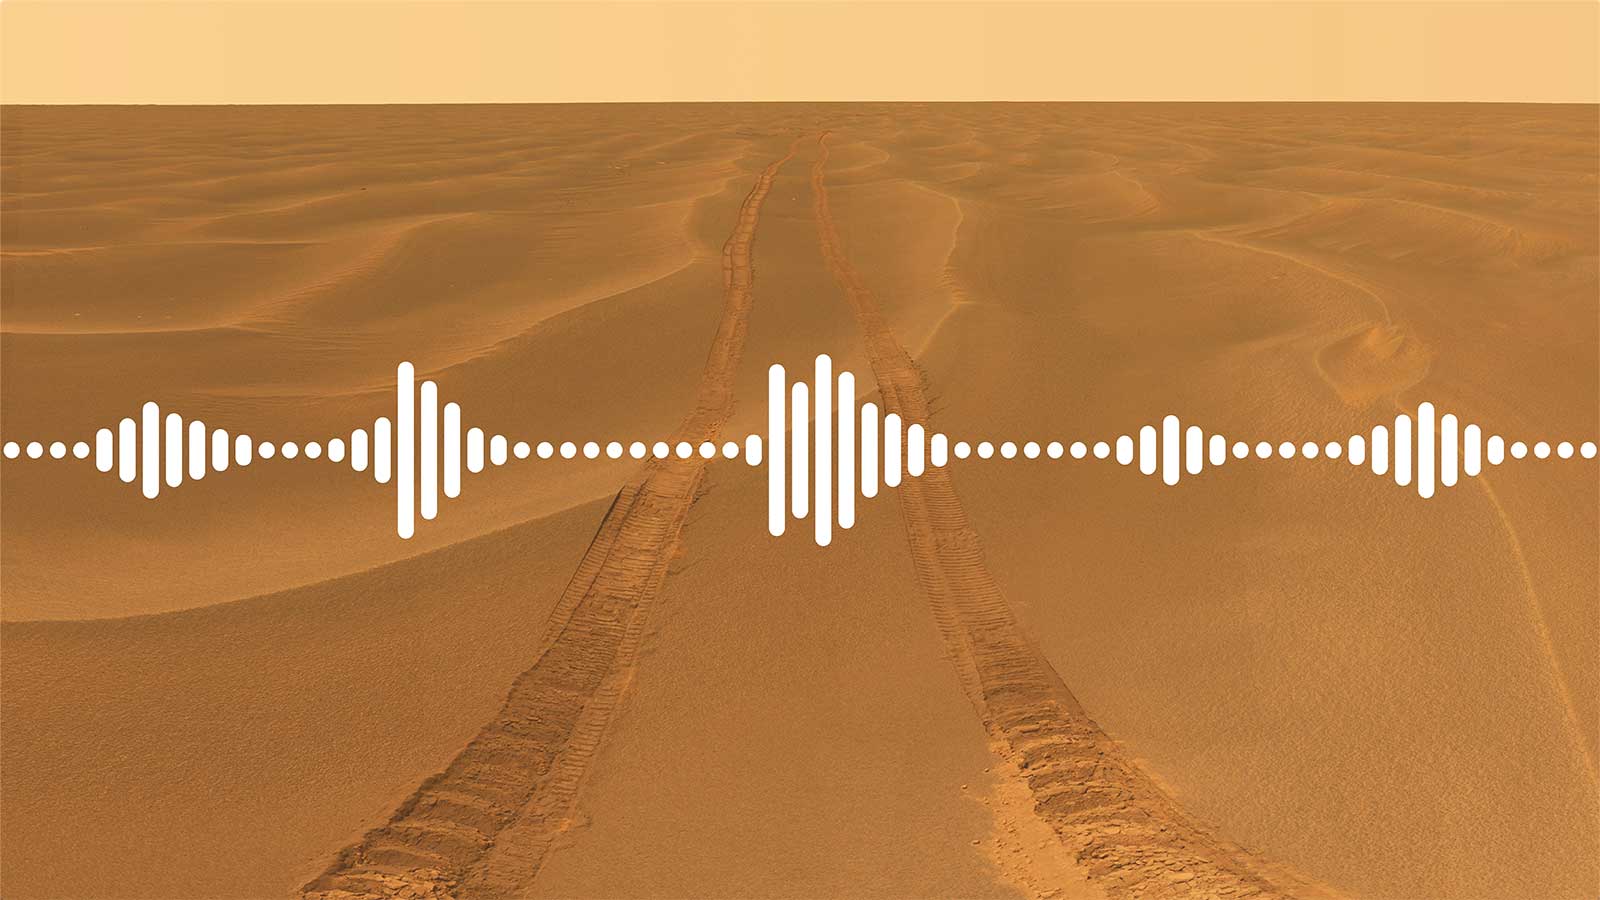 Pronto escucharemos los primeros sonidos de Marte